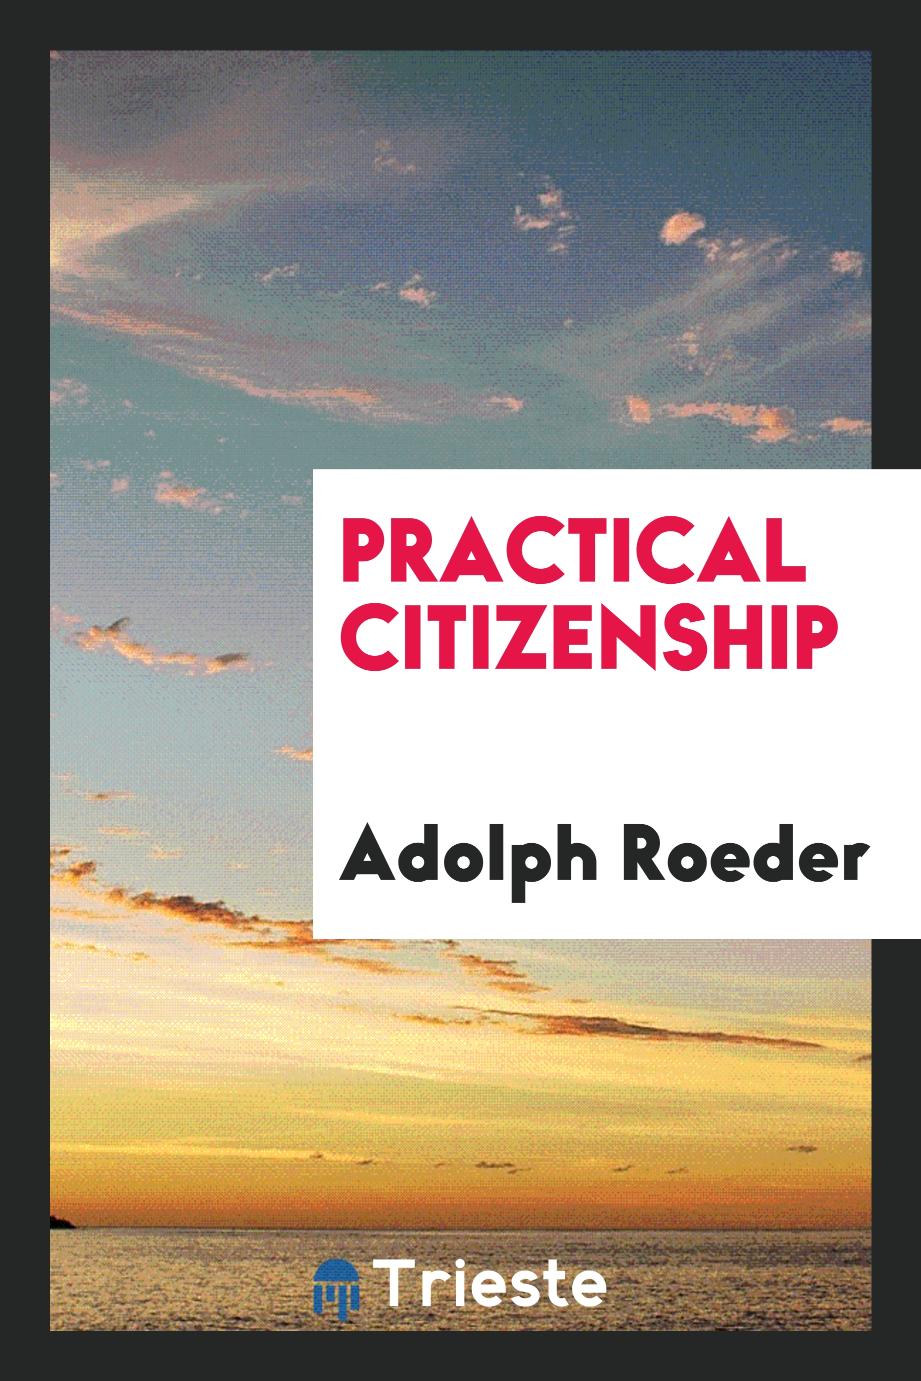 Practical citizenship